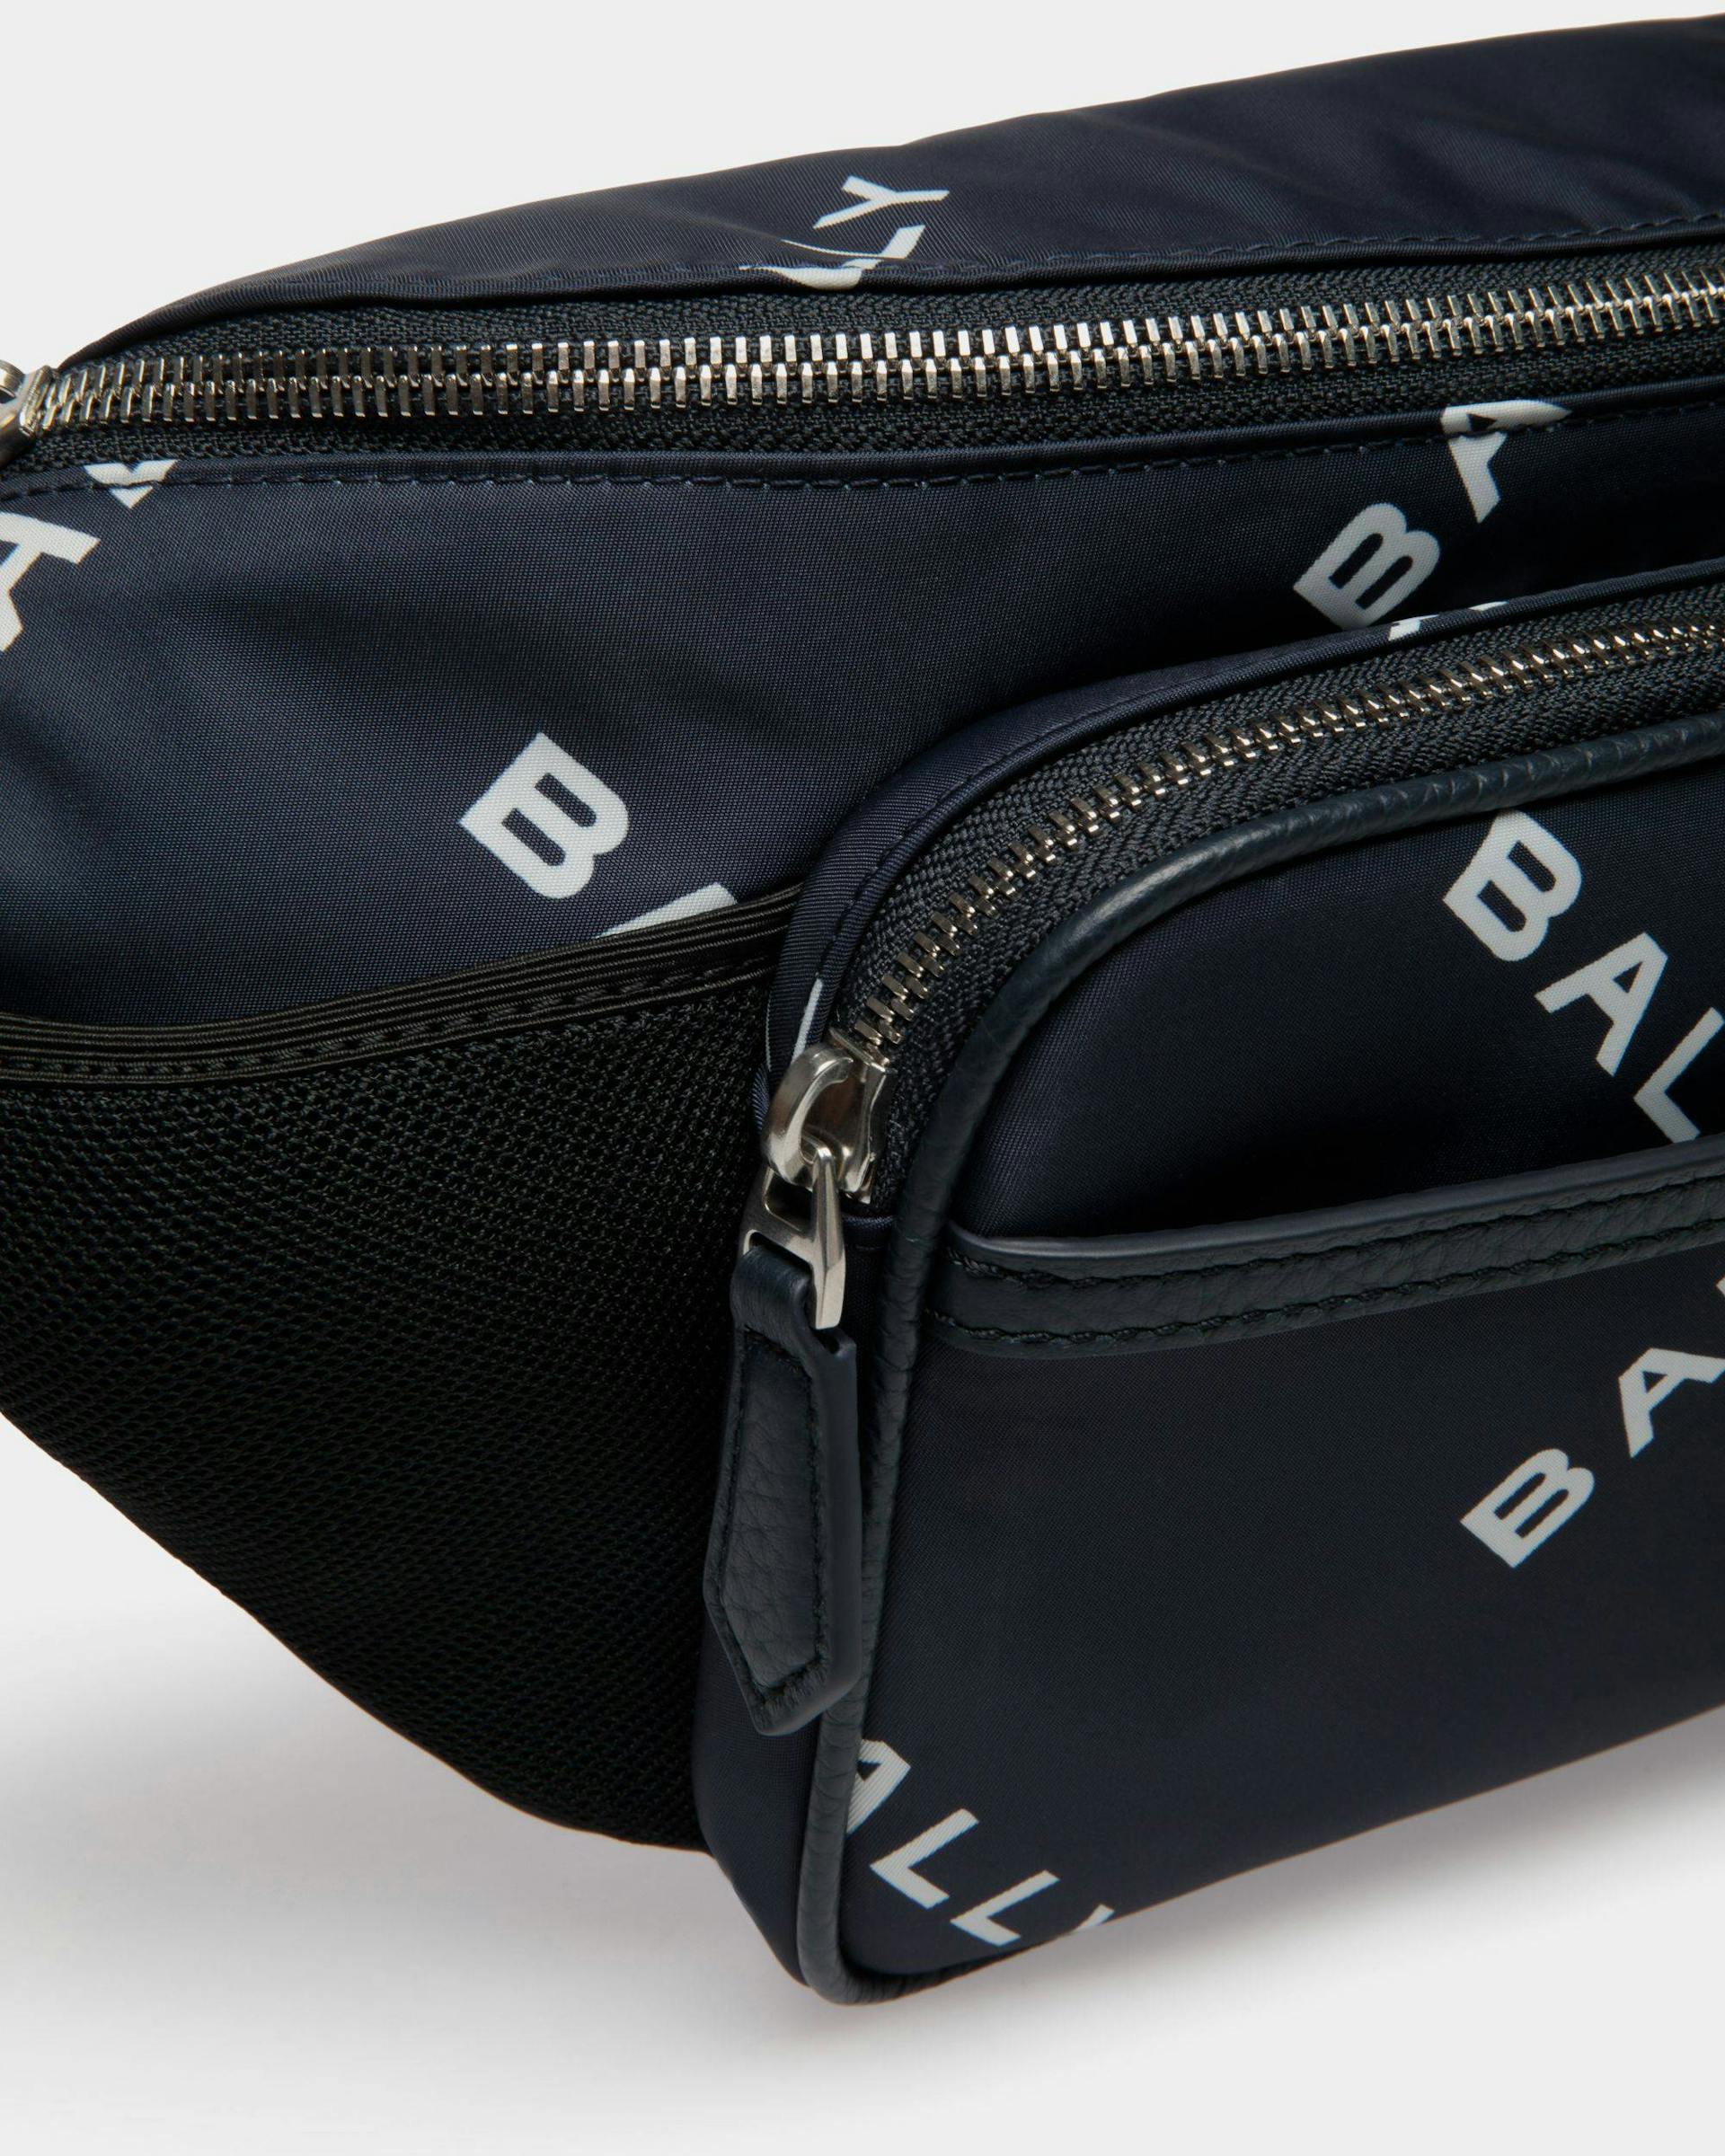 Men's Code Belt Bag In Blue Printed Nylon | Bally | Still Life Detail